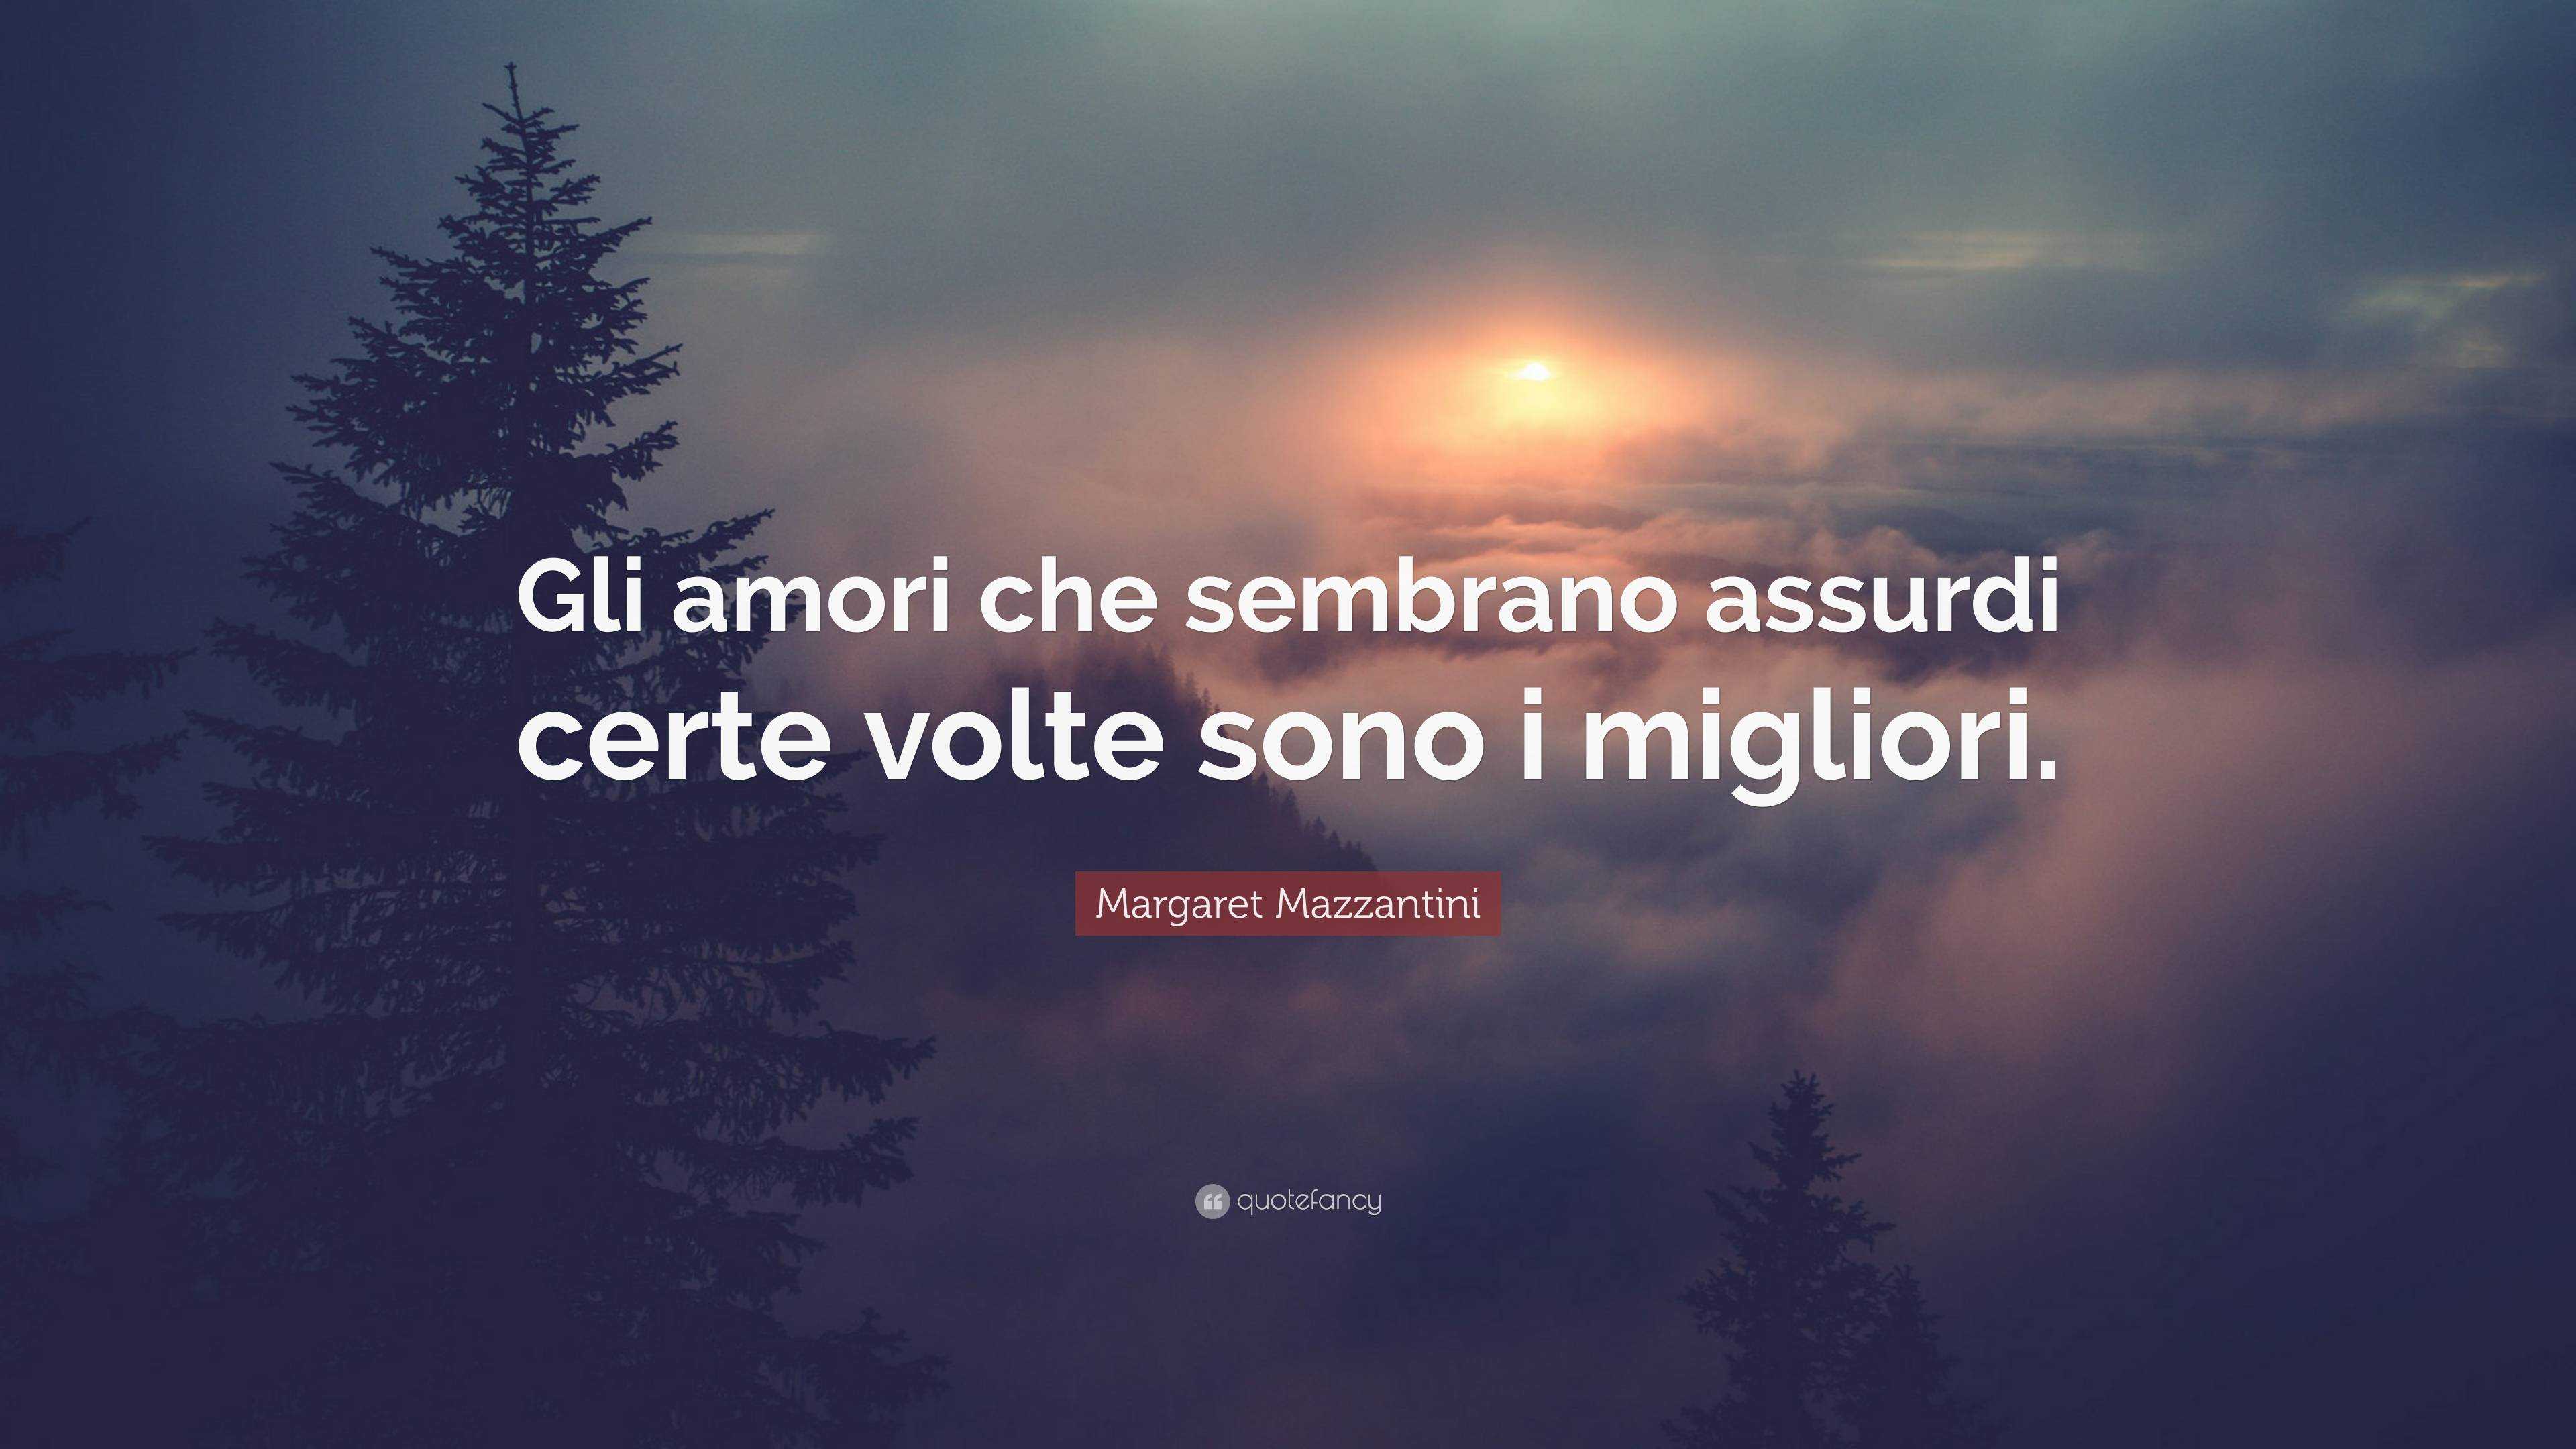 Margaret Mazzantini Quote: “Gli amori che sembrano assurdi certe volte ...